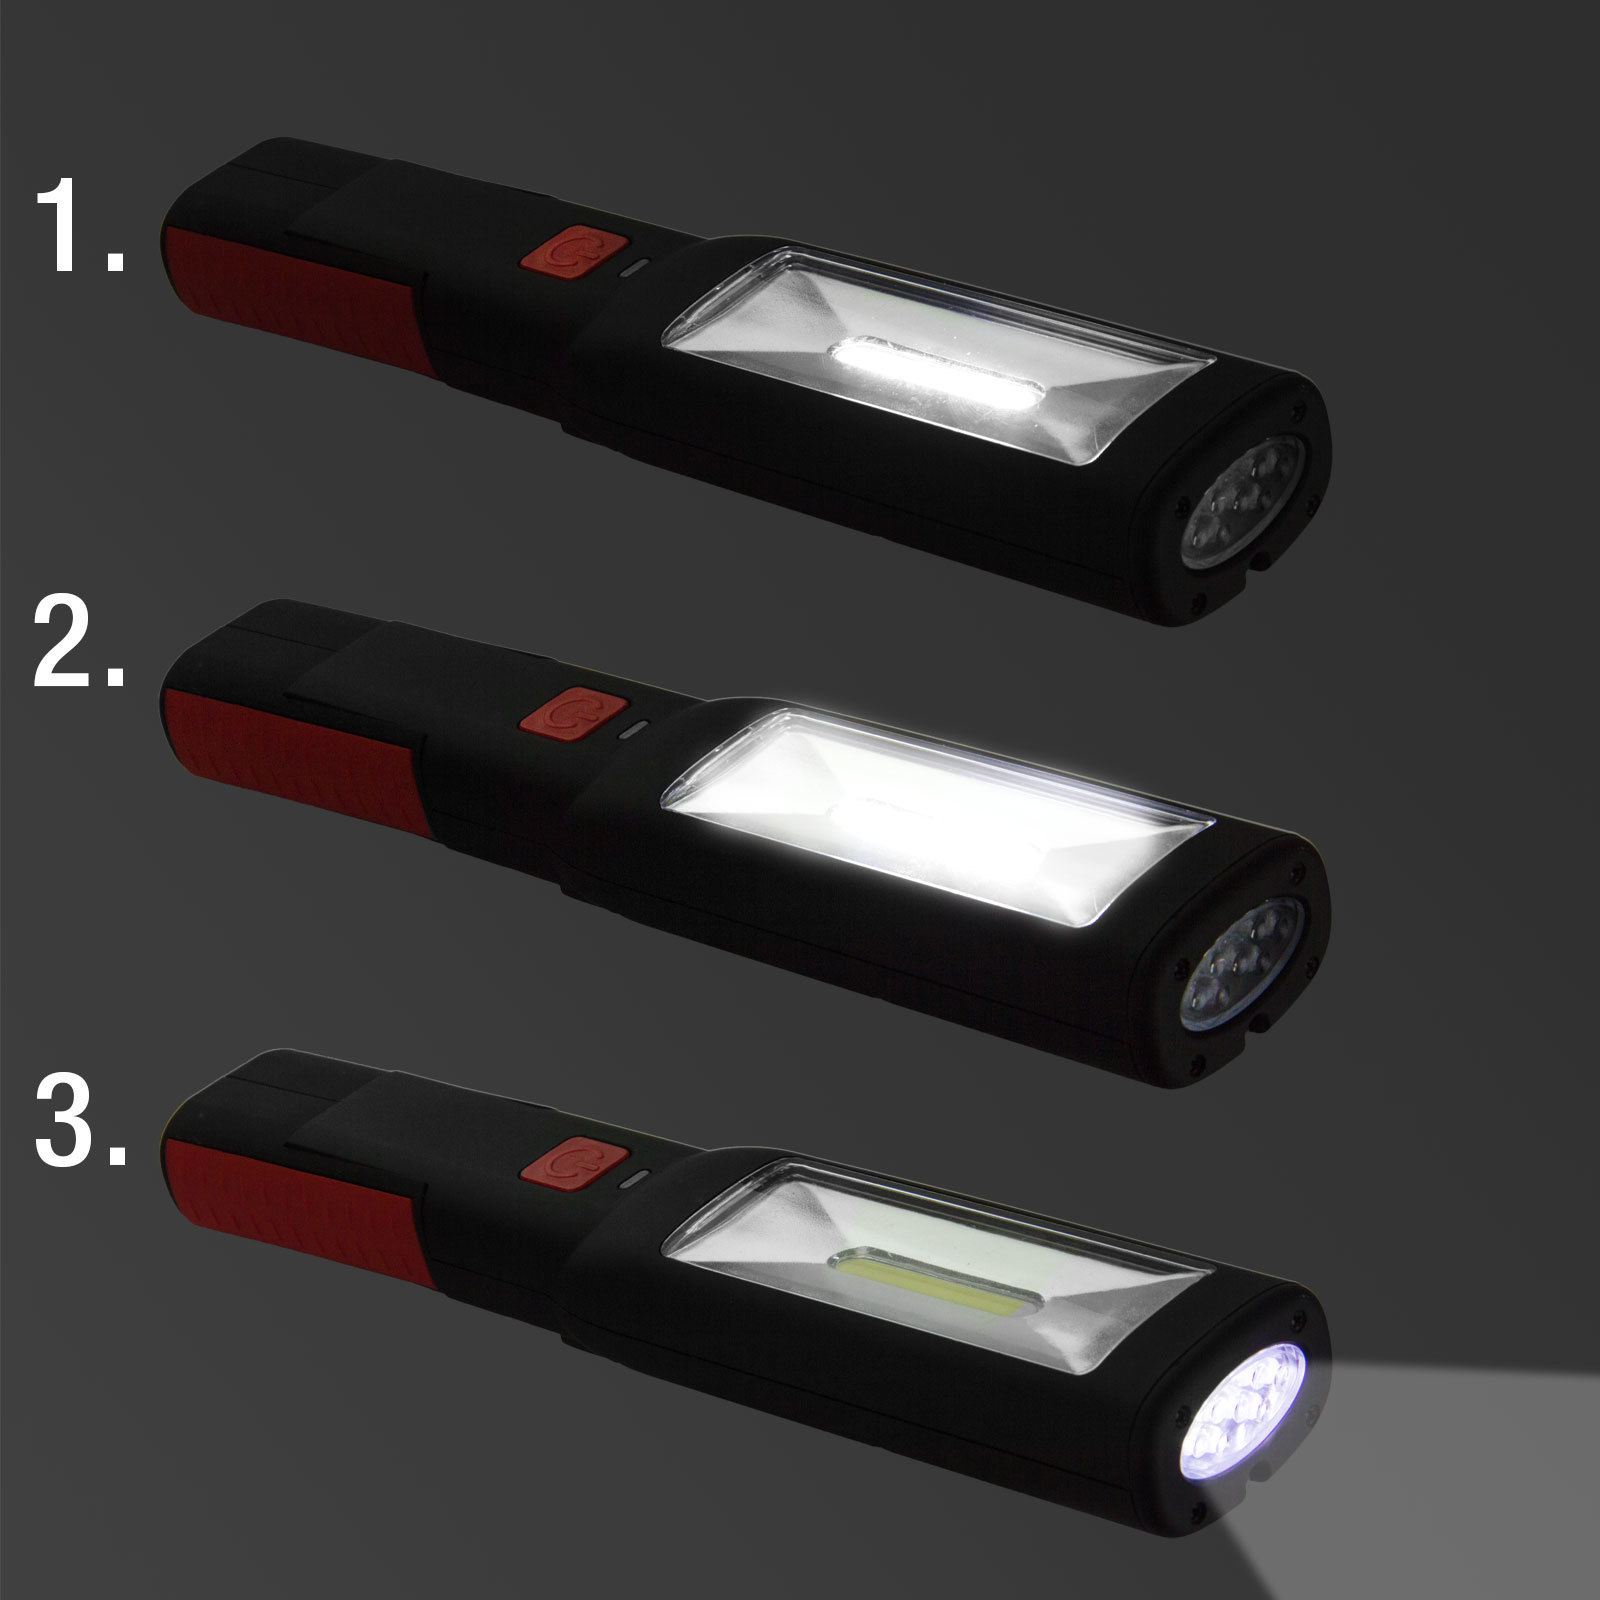 Dema LED Handlampe / Arbeitslampe 3W Li-Ion